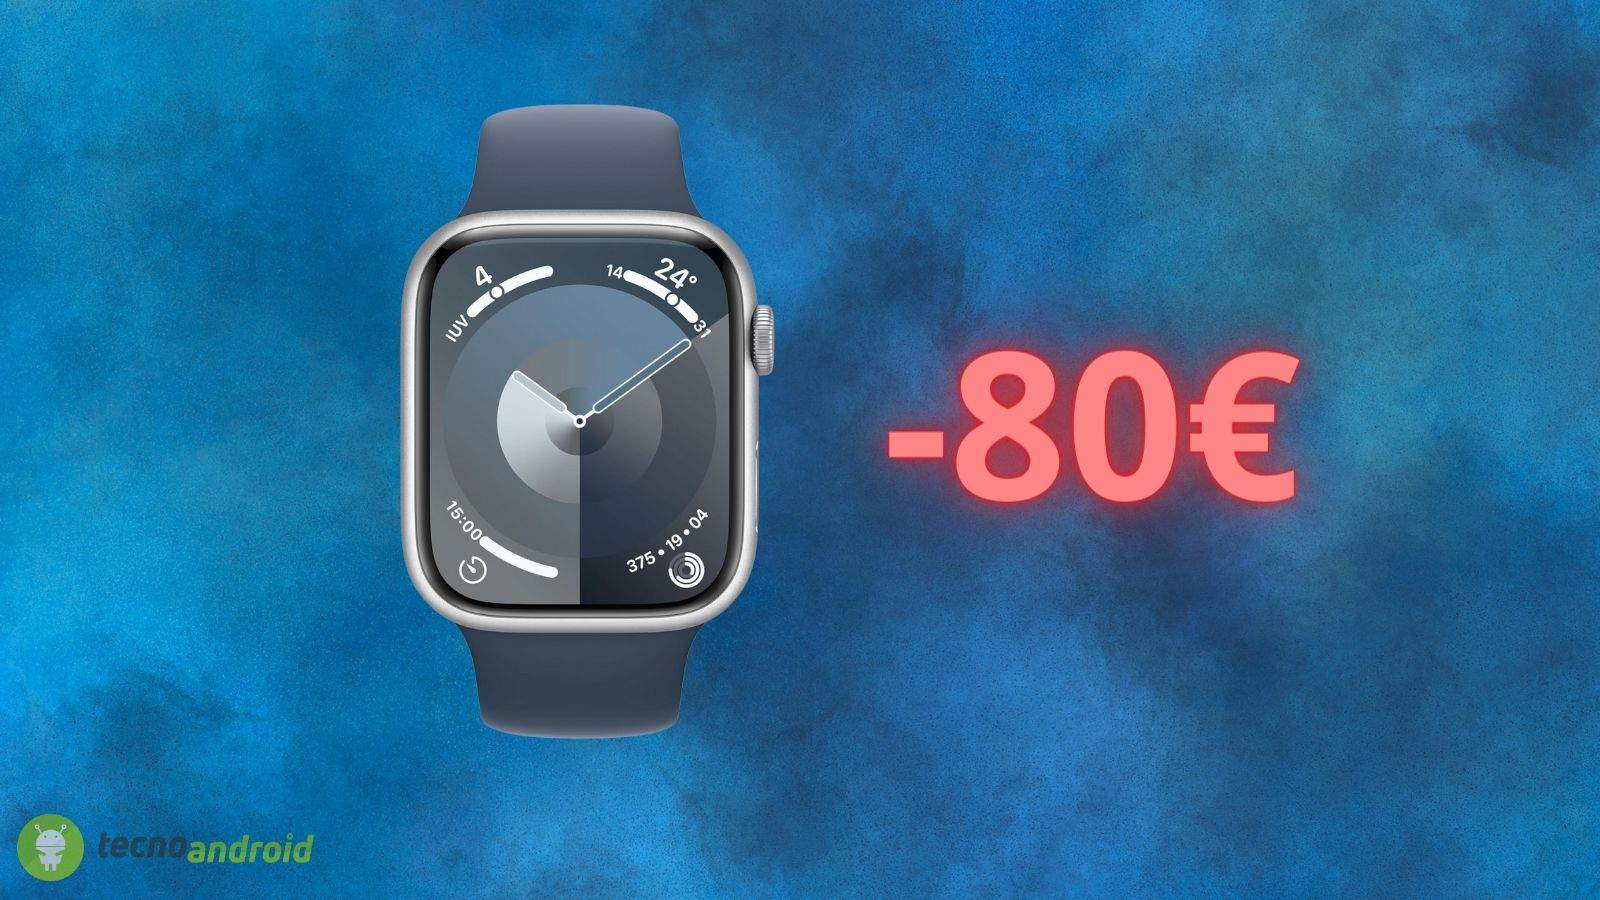 Apple Watch: prezzo SCONTATO di 80 euro su Amazon